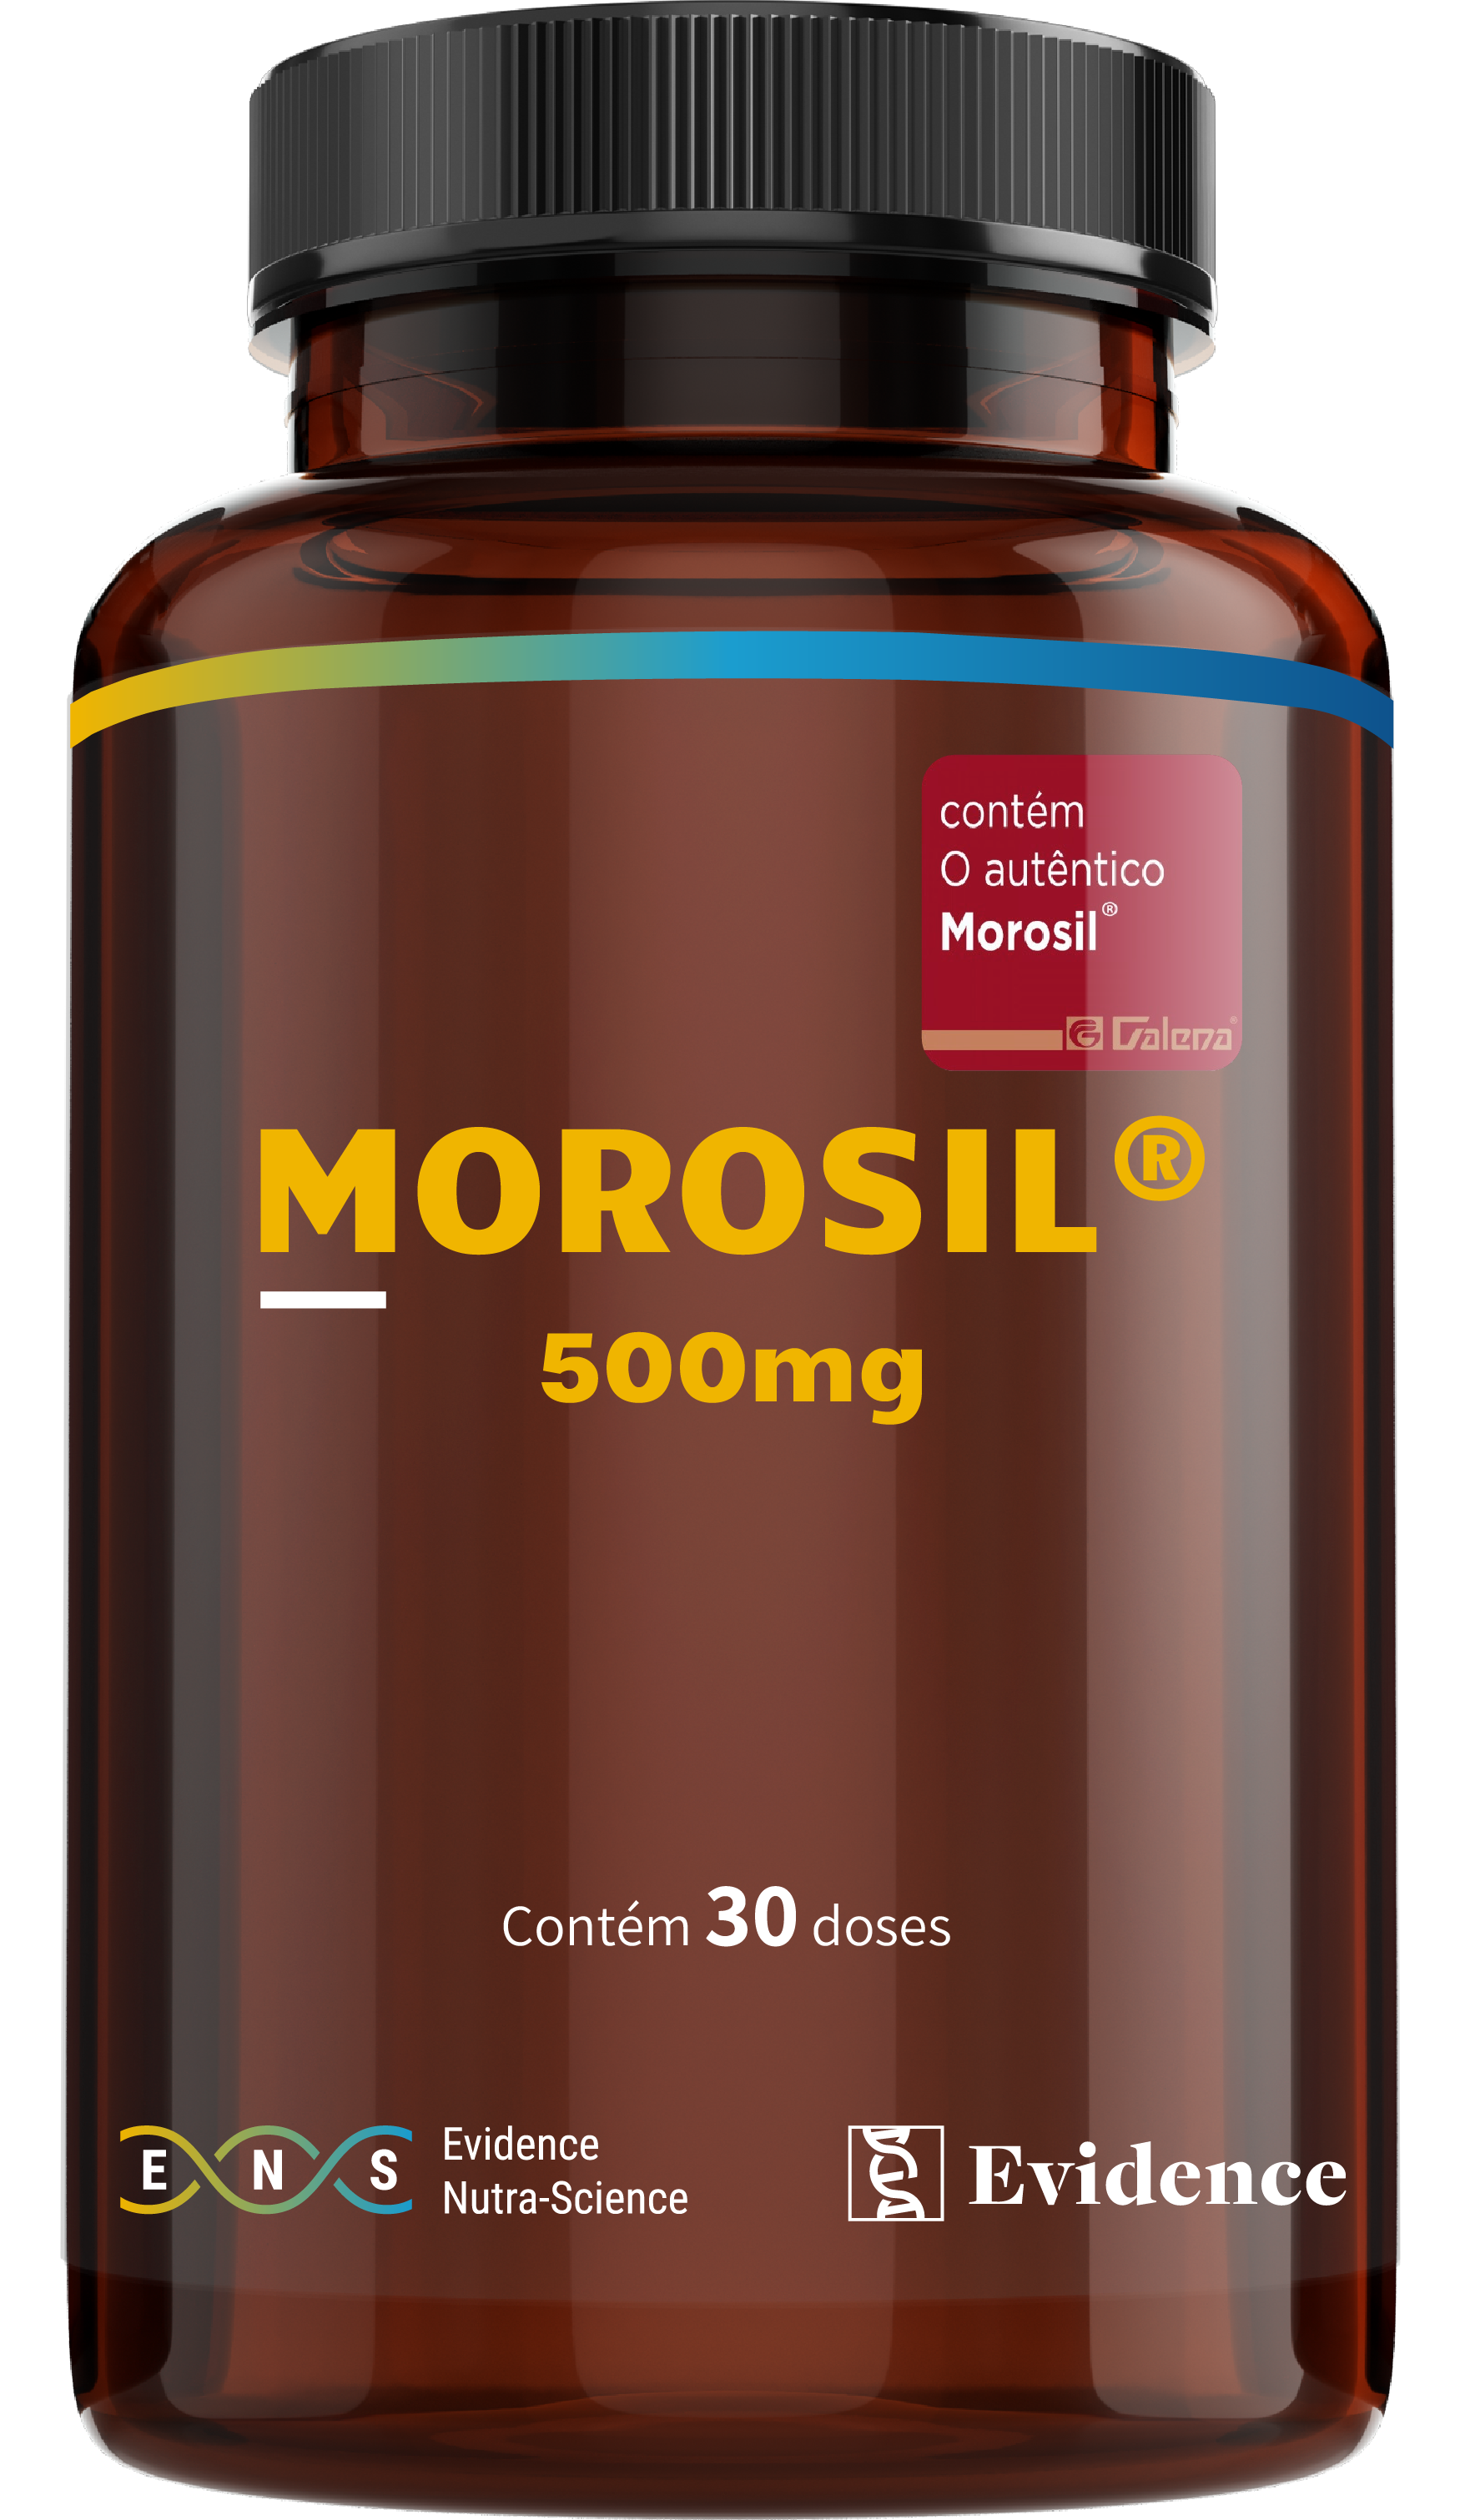 Morosil® 500mg - Evidence